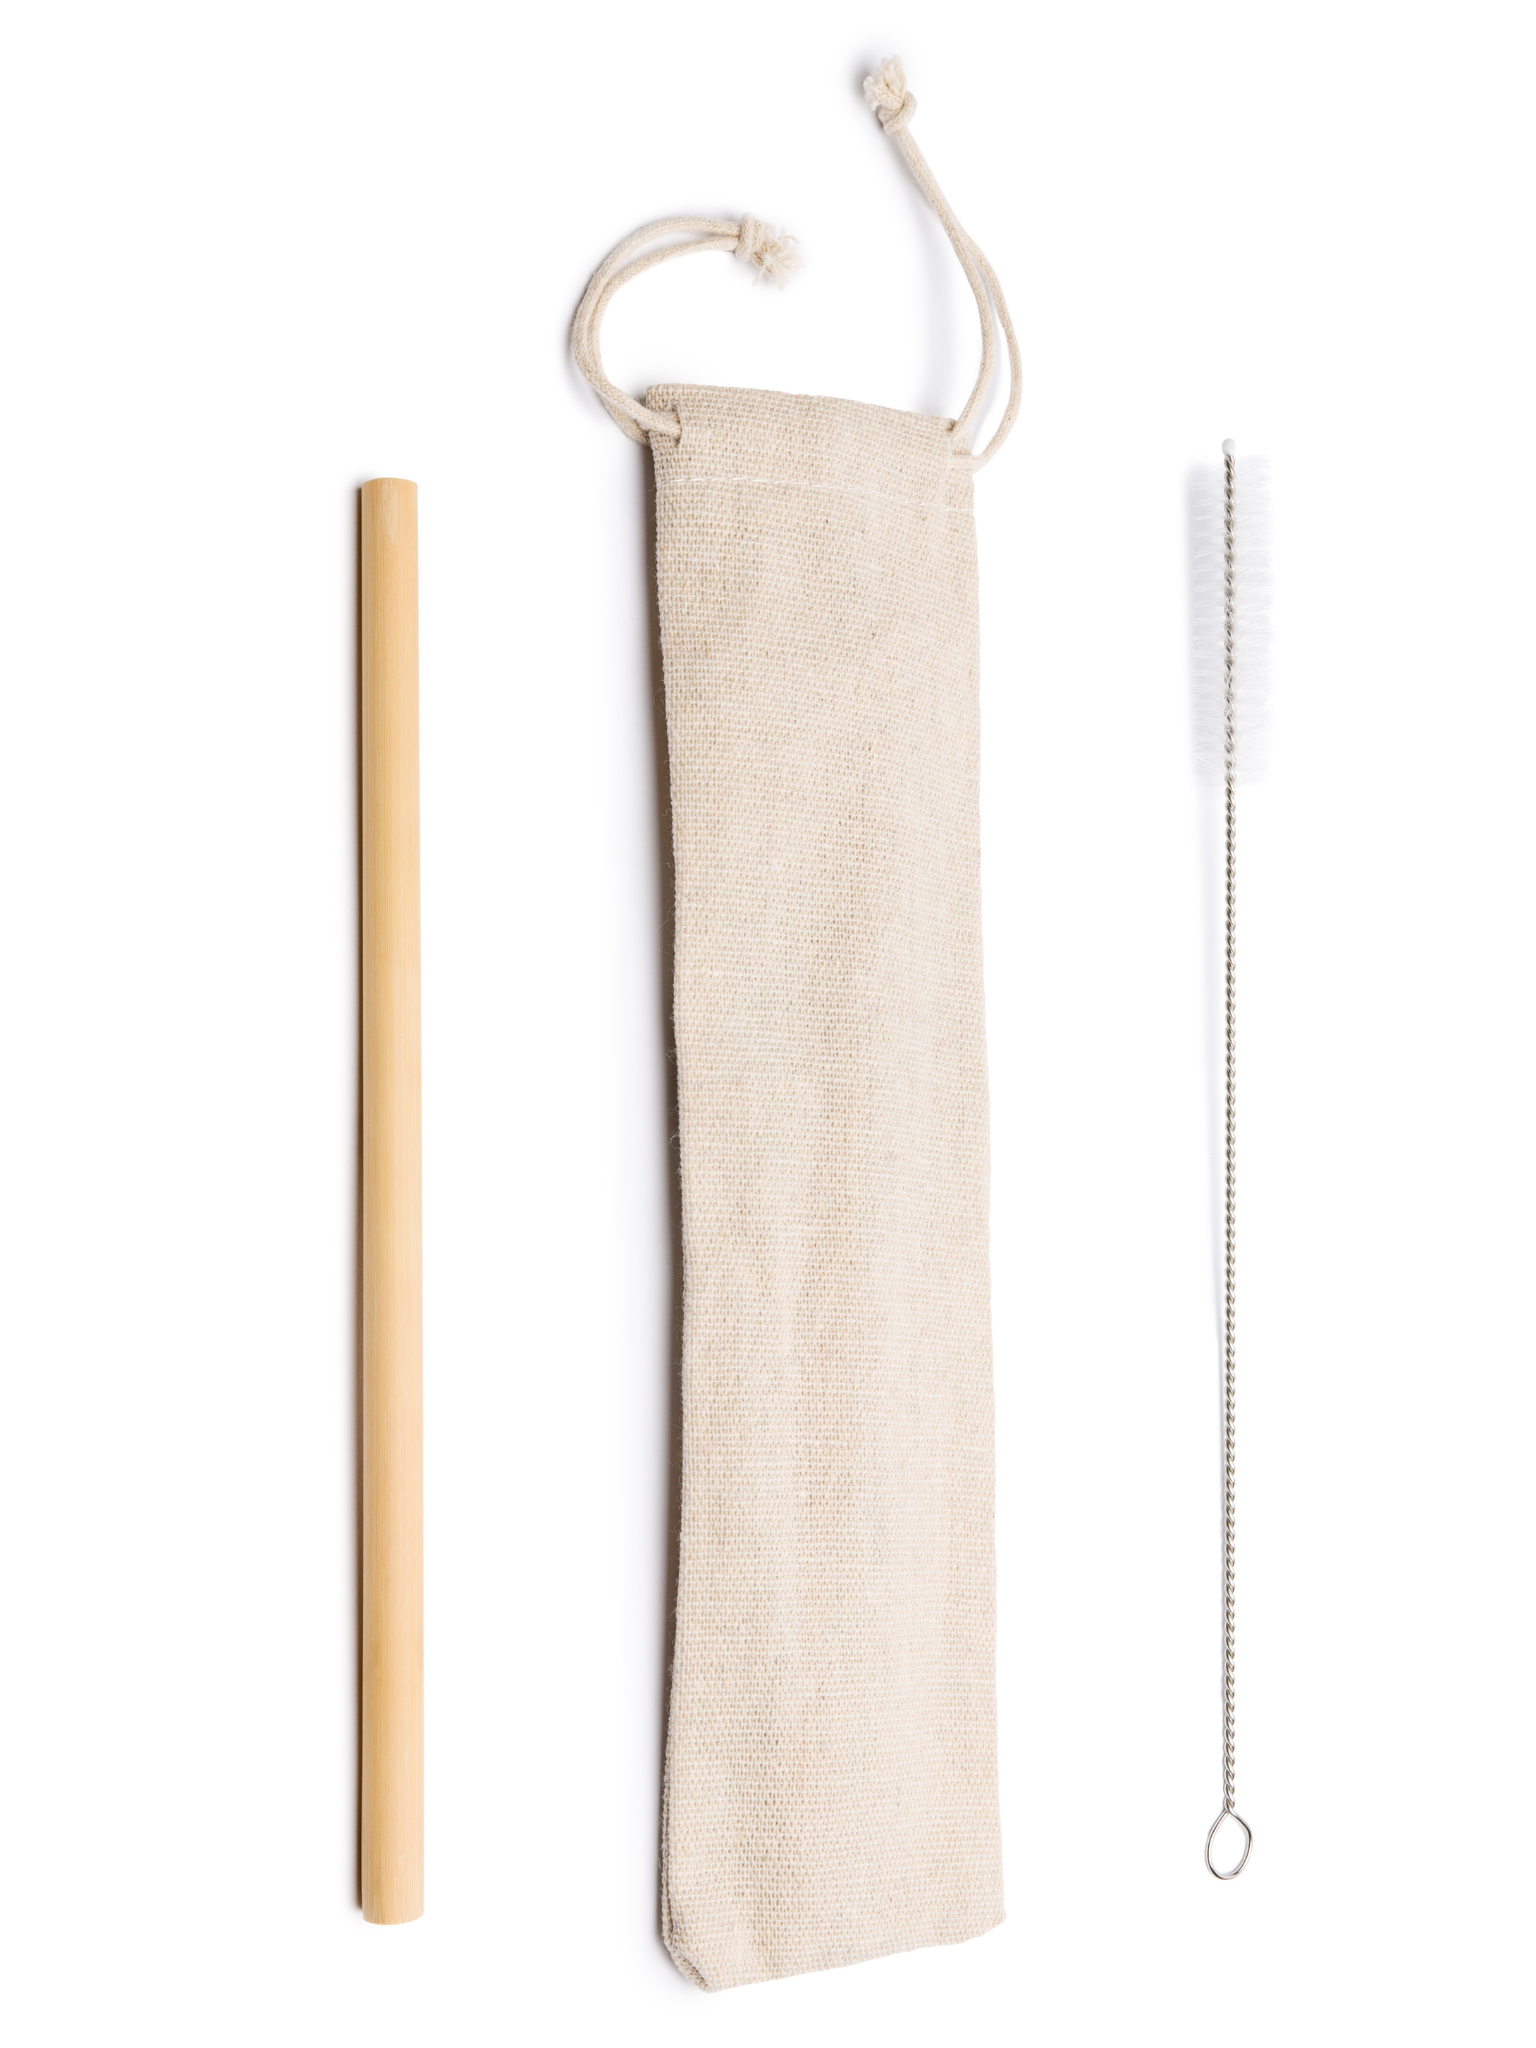 Bamboo Straw Gift Kit Goodie Pocket